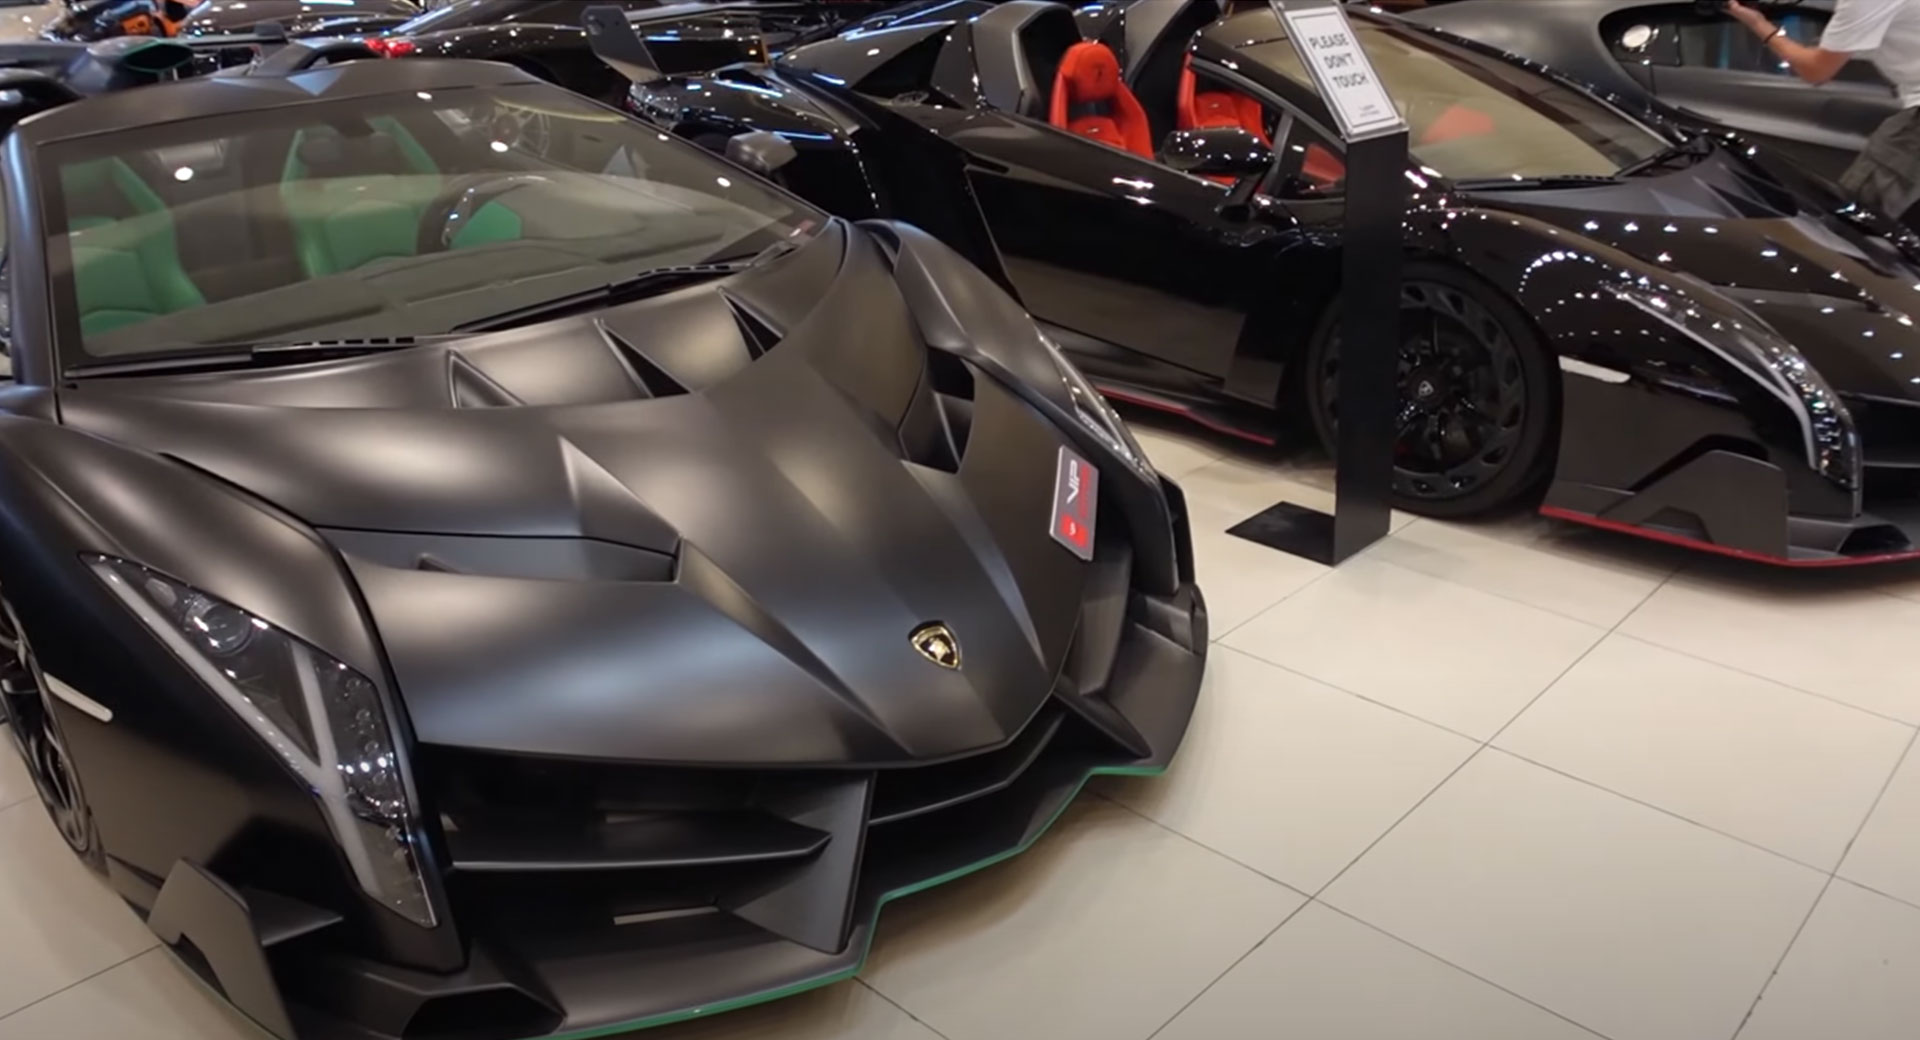 Exotic Dealership In Dubai Has Two Lamborghini Venenos In Its Showroom |  Carscoops